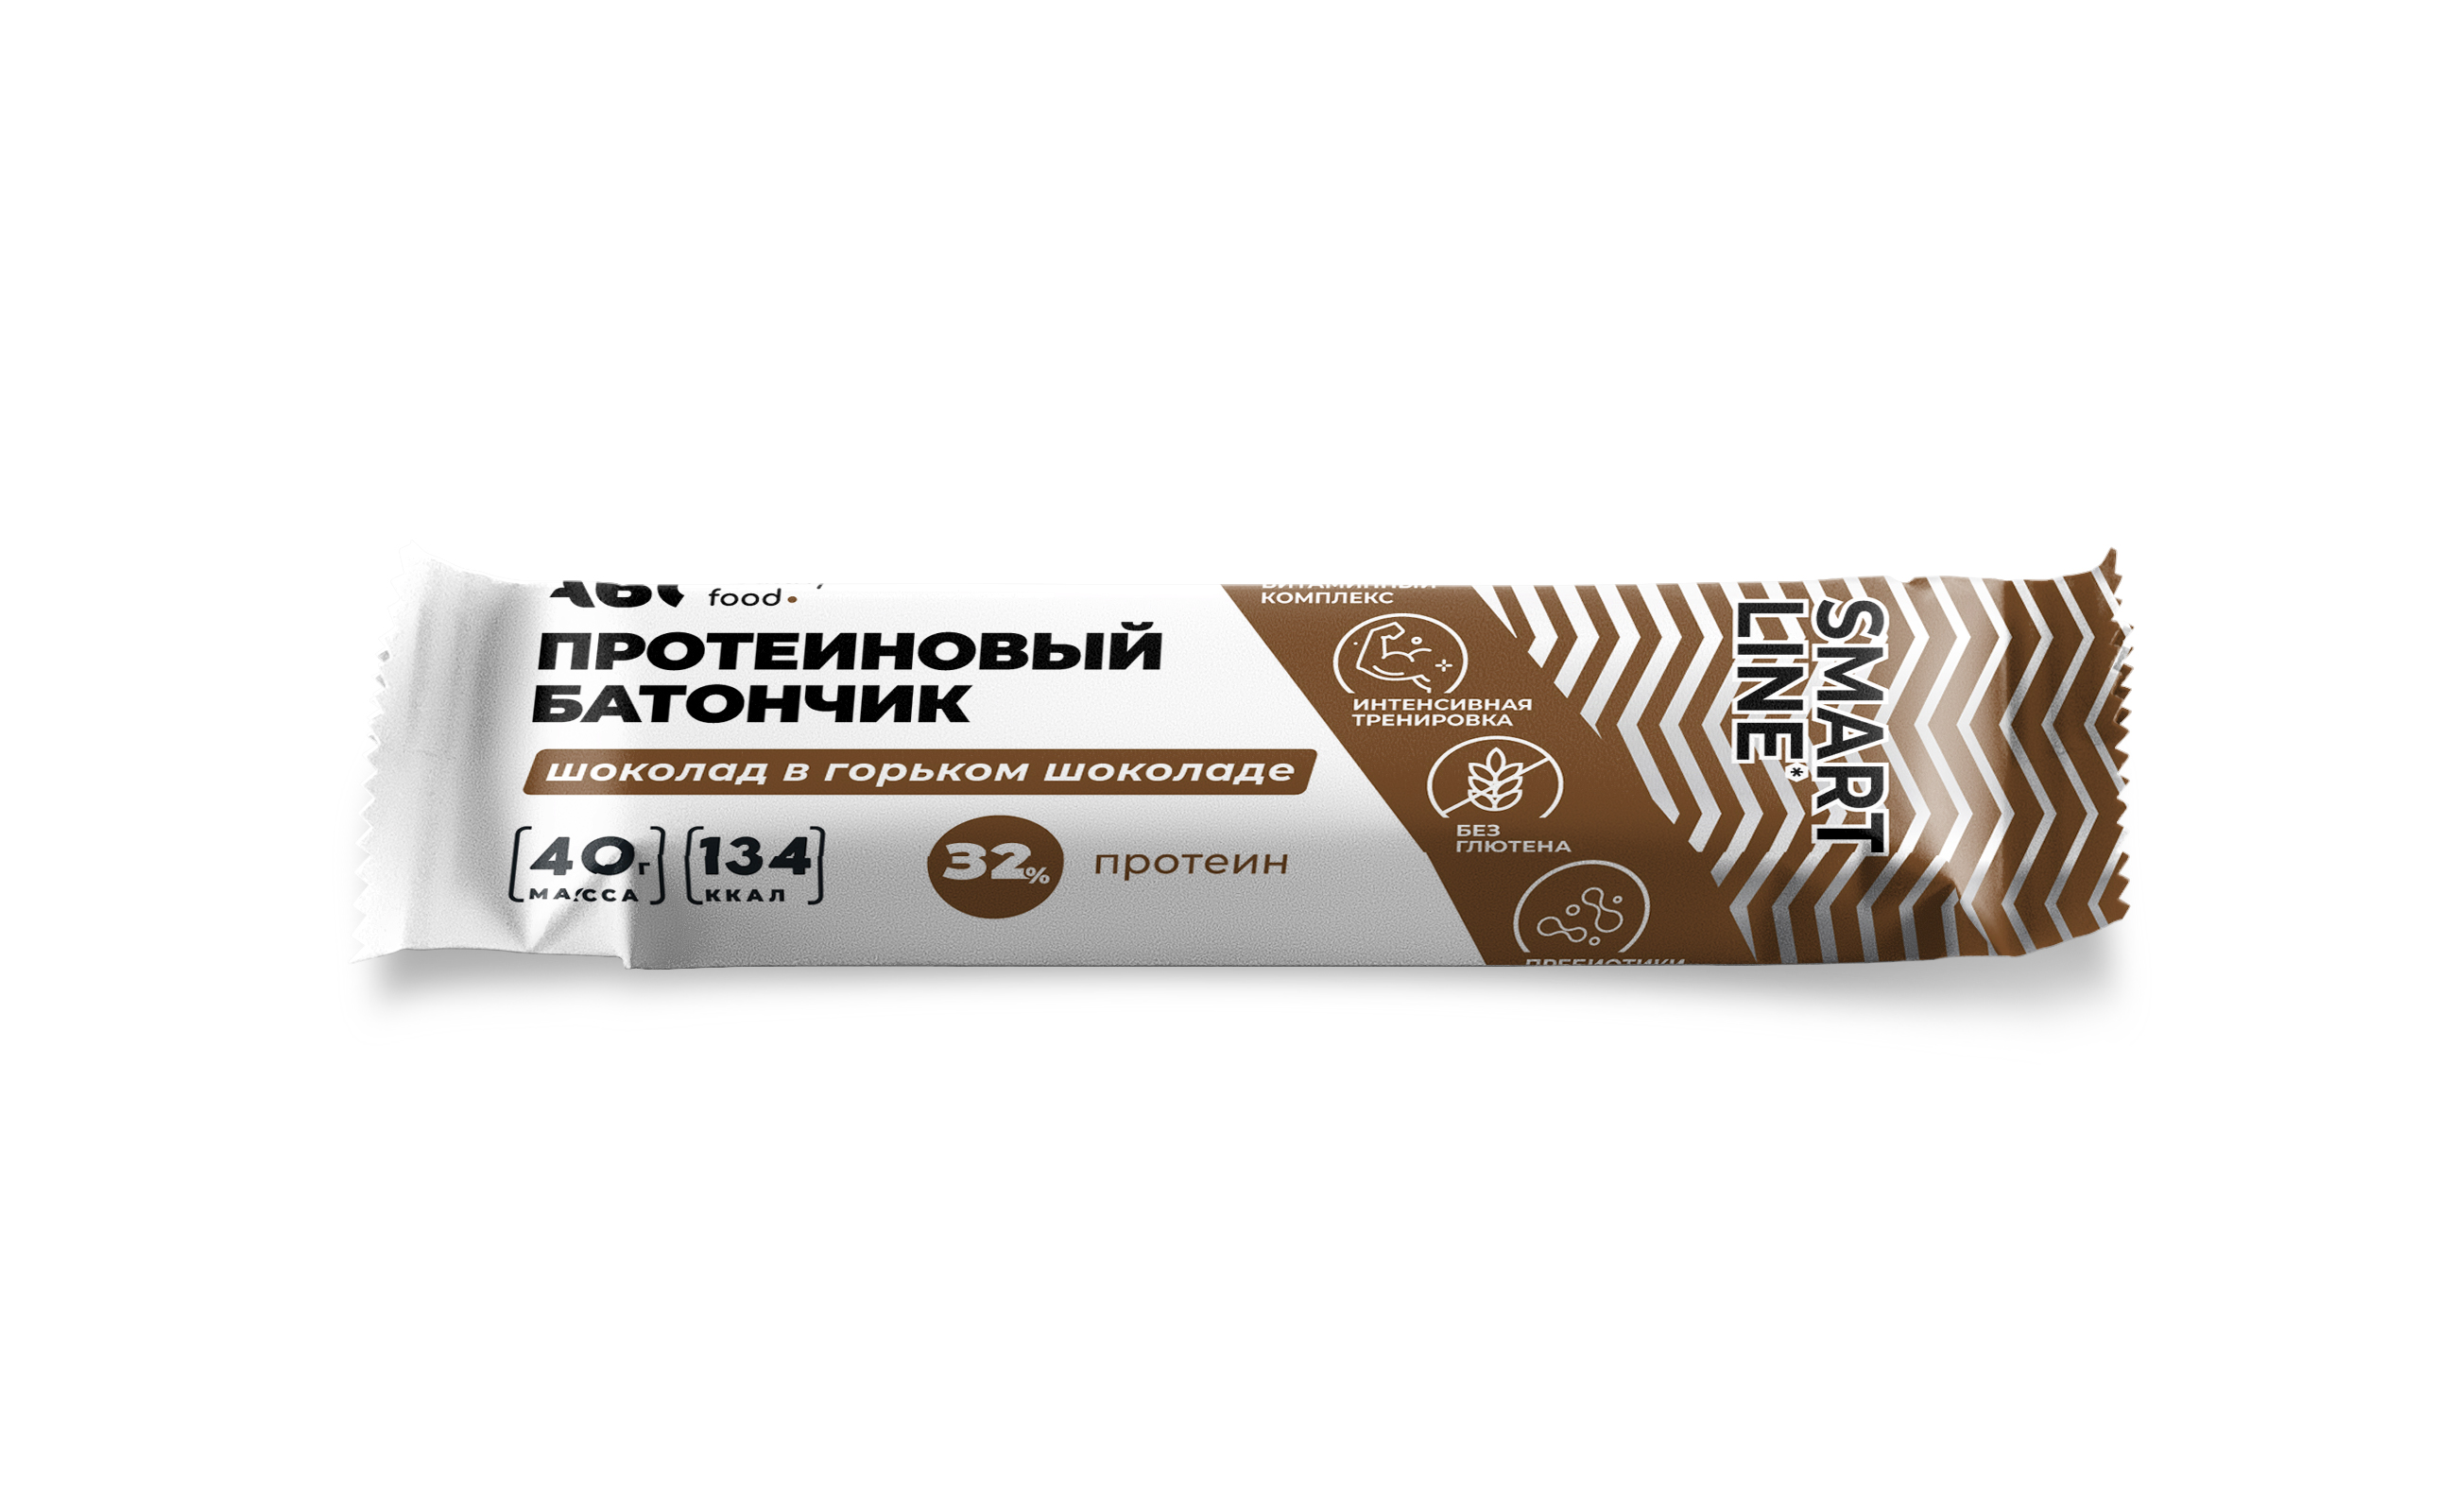 АВС хэлси фуд протеиновый батончик шоколад в горьком шоколаде 32% 40г bodybar батончик протеиновый ореховый микс в горьком шоколаде